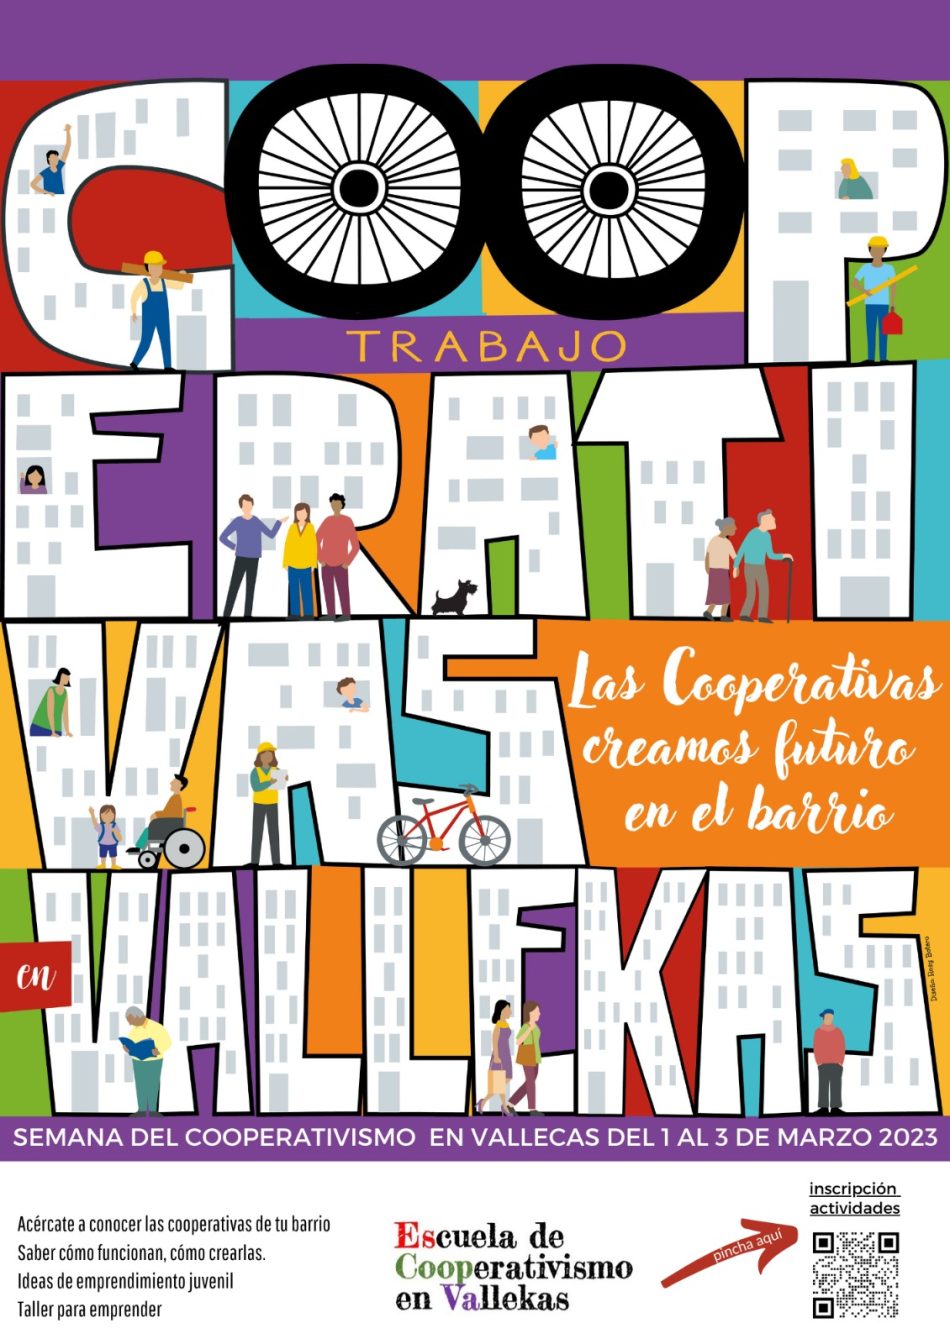 Primera Semana del Cooperativismo en los distritos de Vallecas: 1-3 marzo